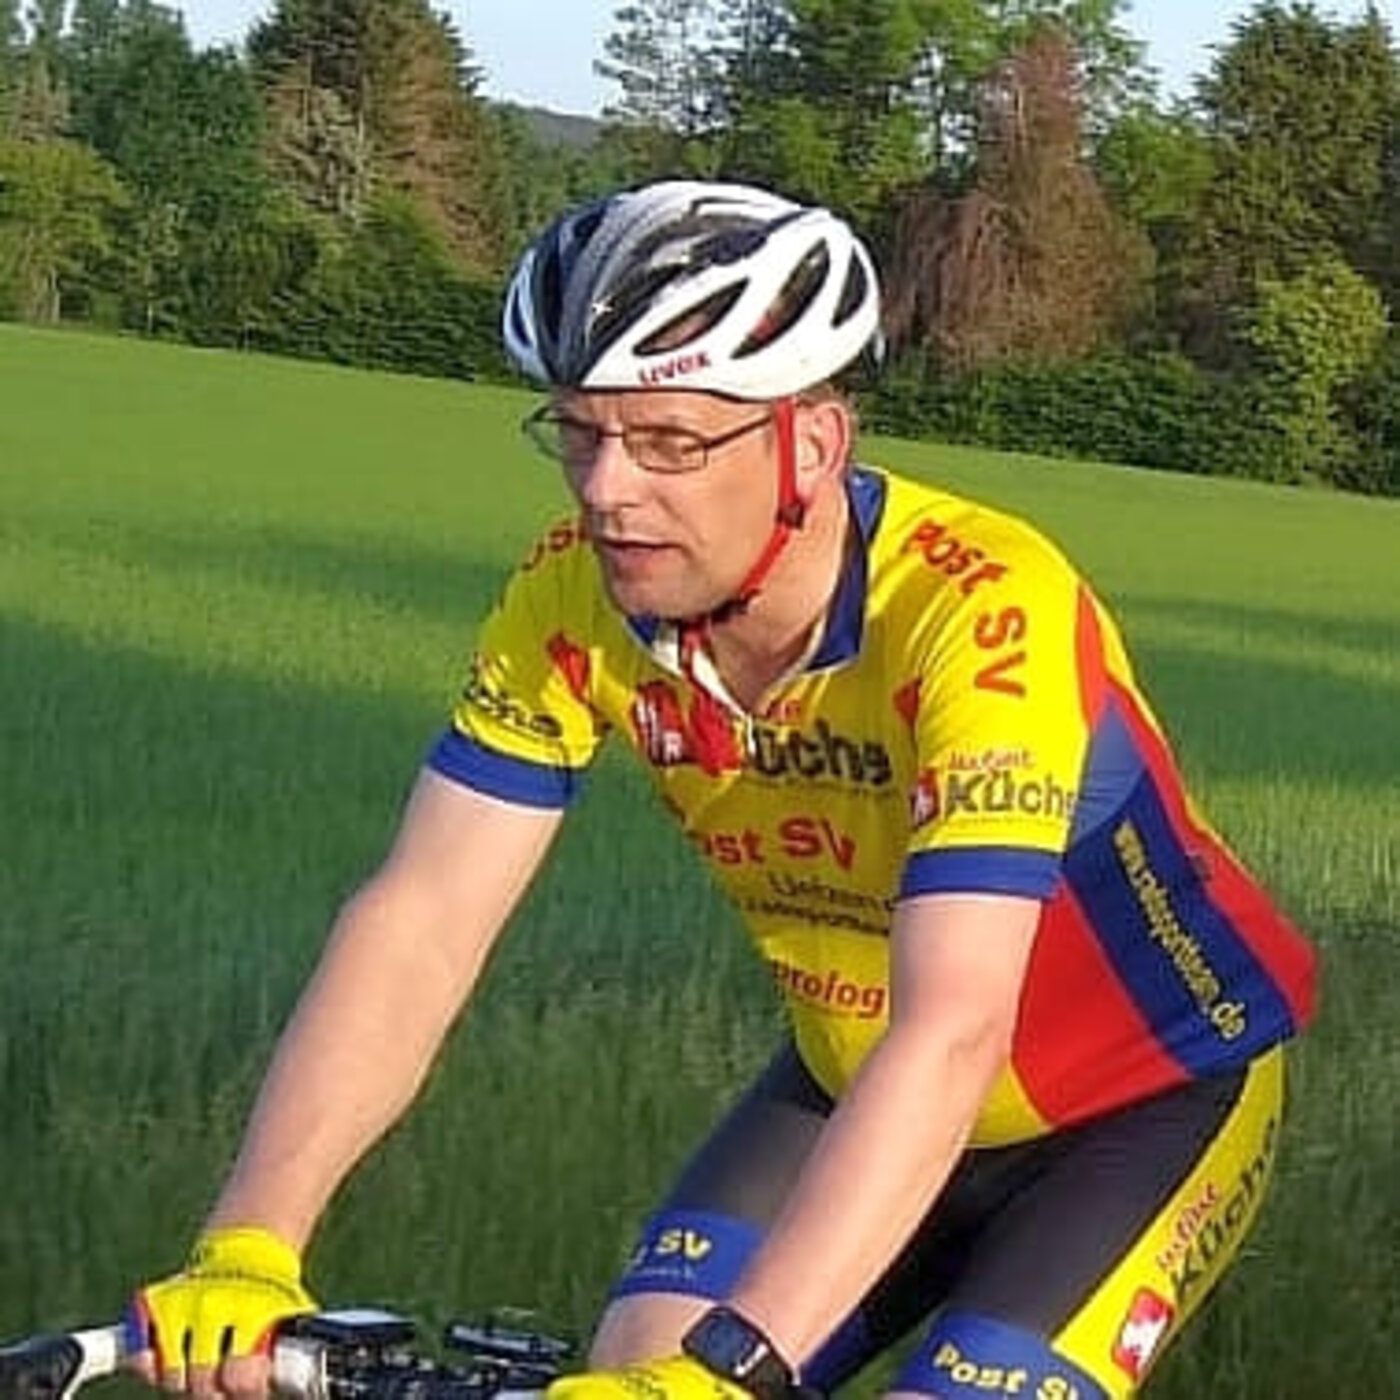 Ein sommerlich gekleideter Radsportler fährt auf einem Rennrad durch ein Feld.